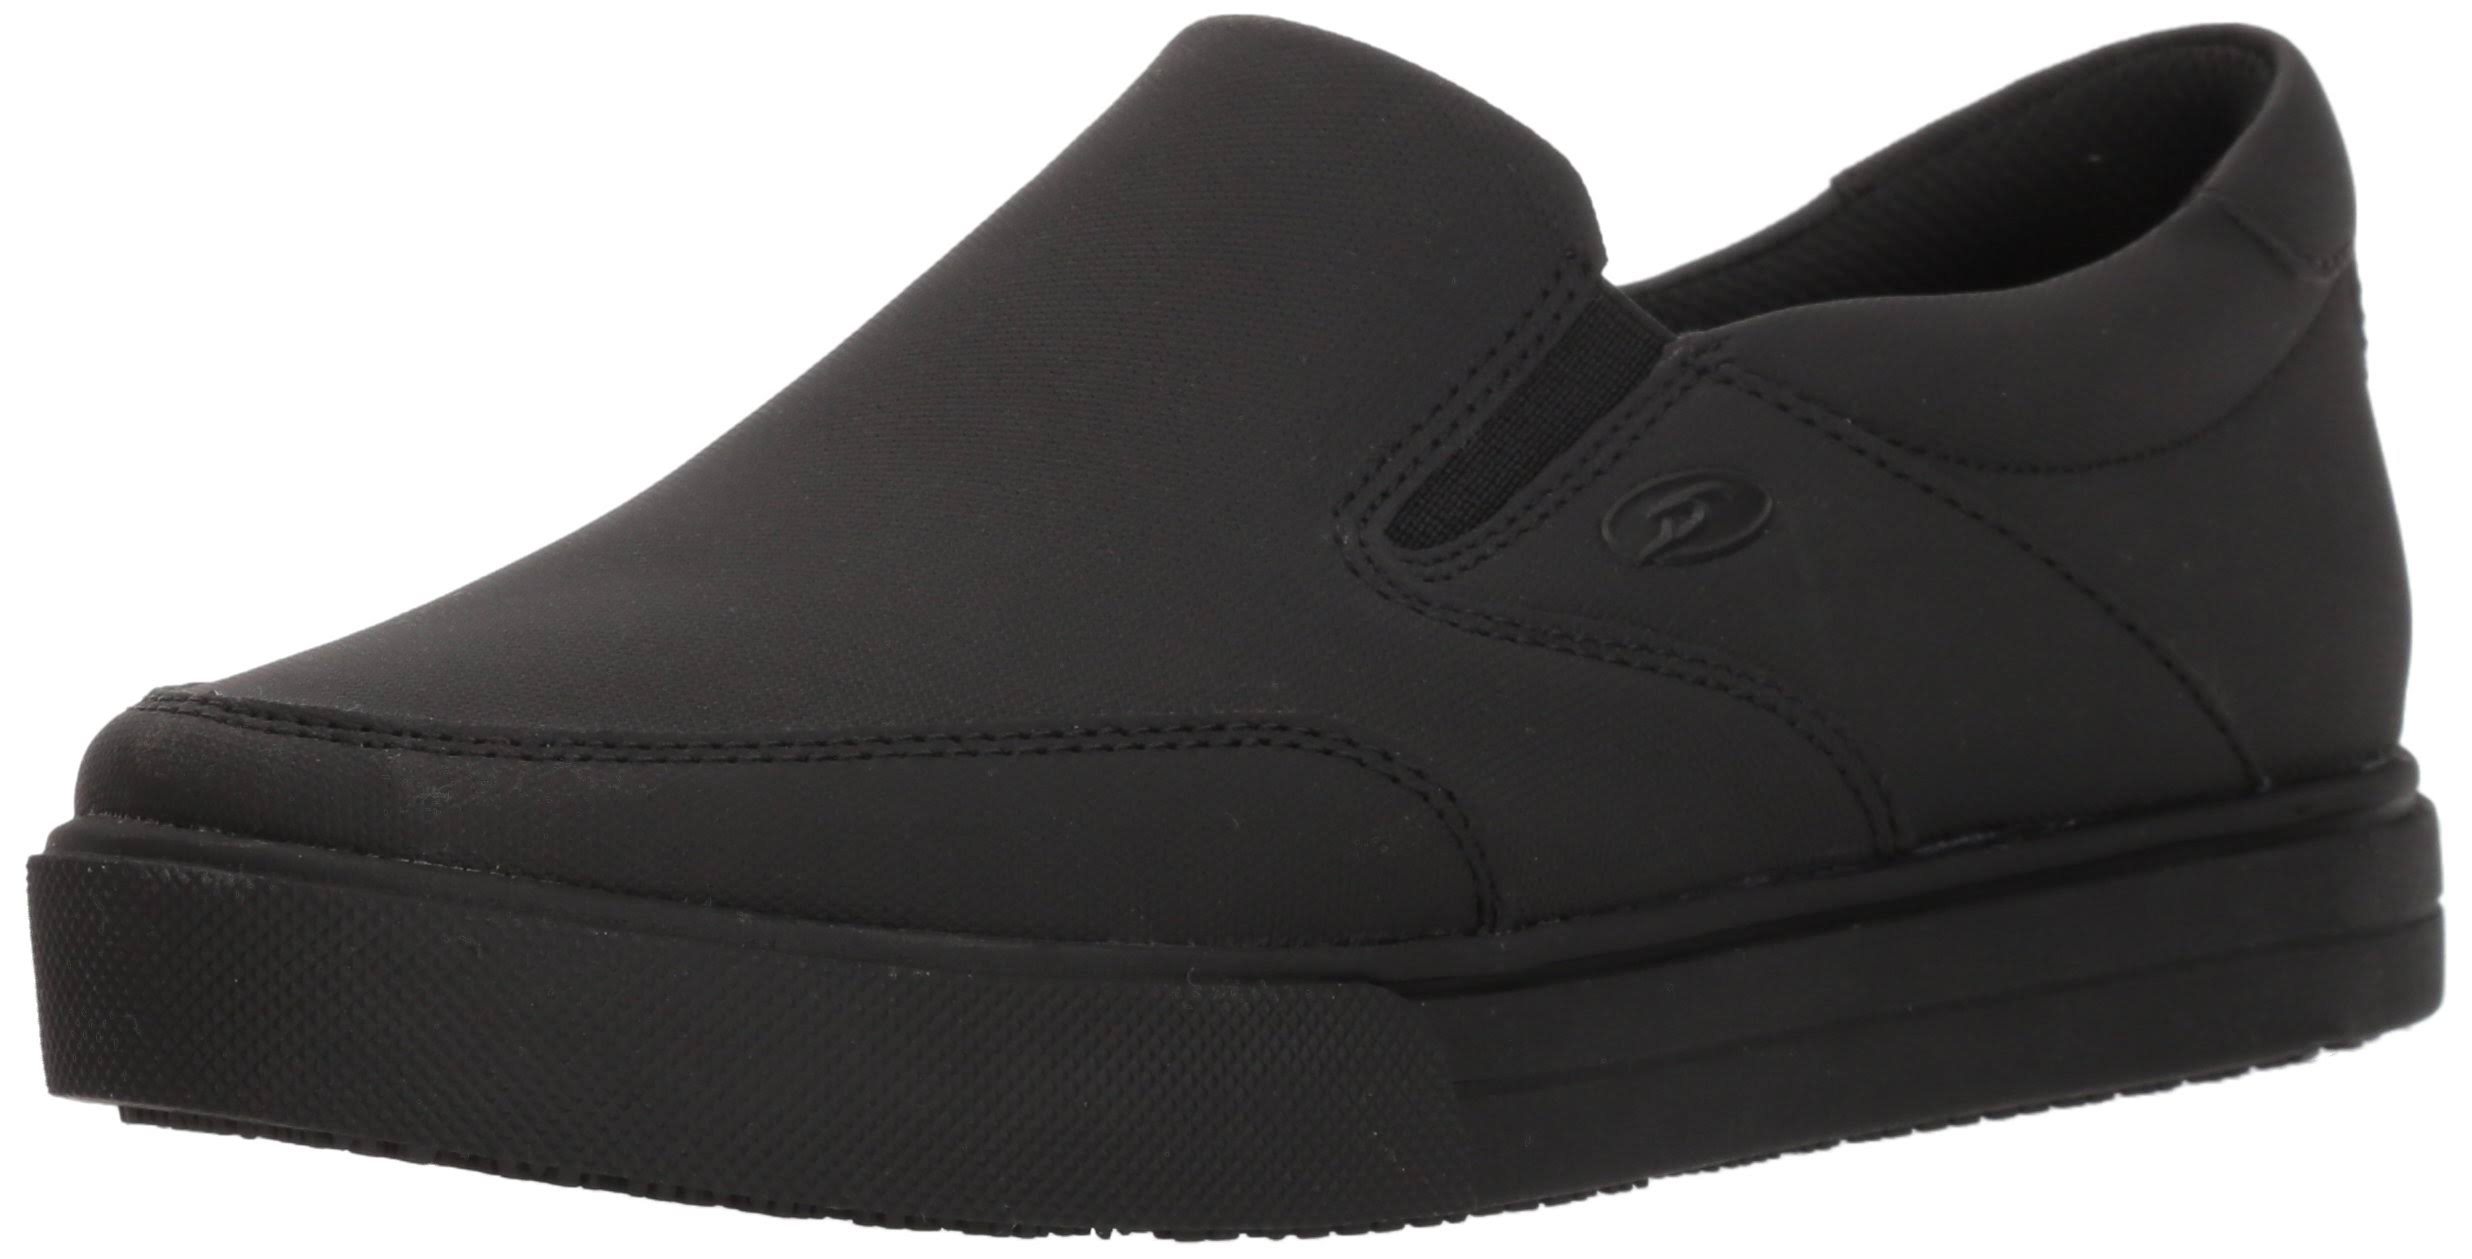 Dr. Scholl's Shoes Women's Vital Slip-On Shoe, Size: 10, Black - WWWW